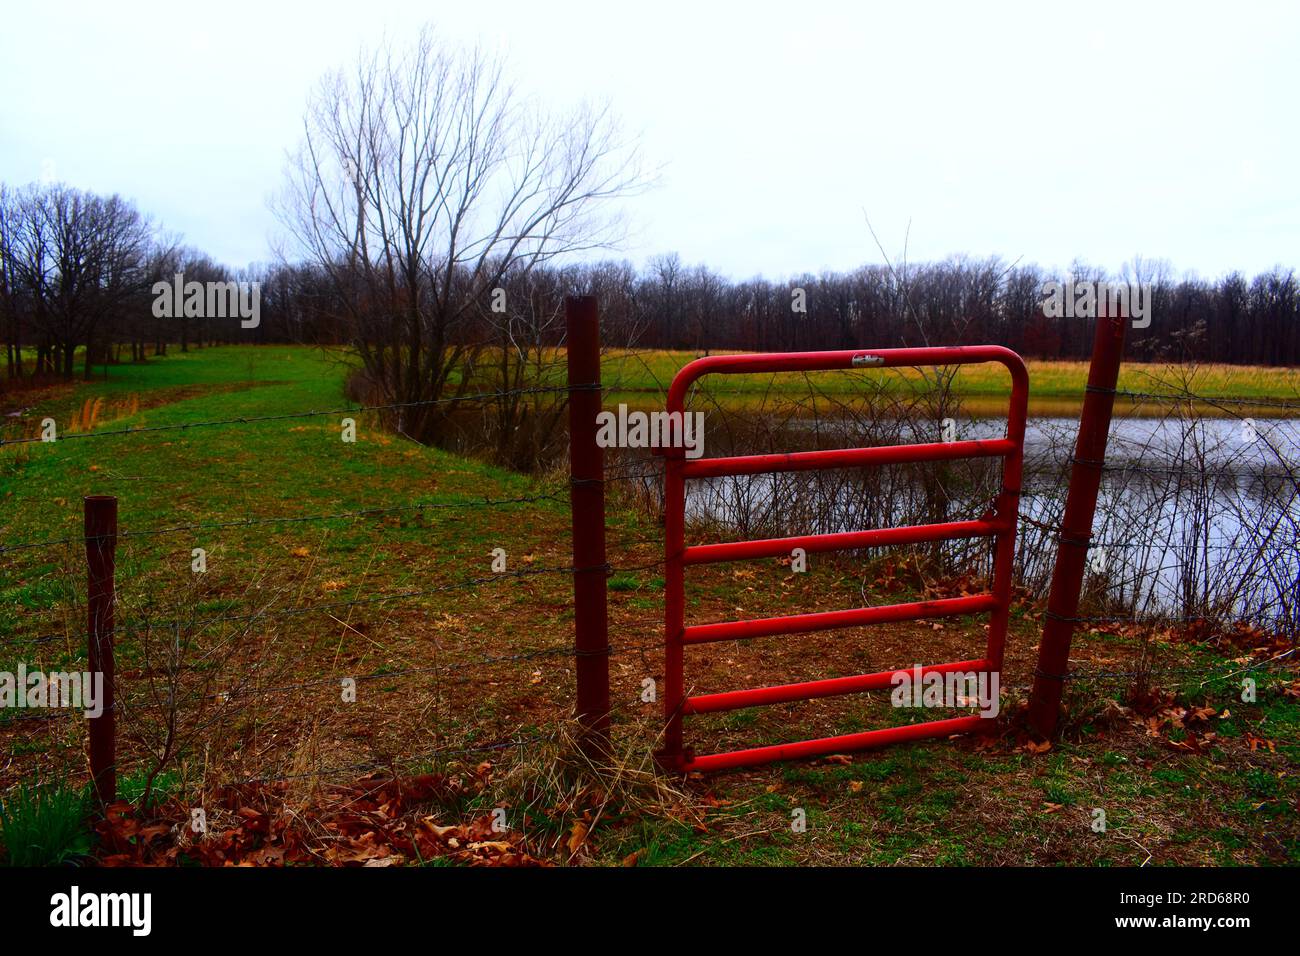 Ein geschlossenes Metalltor, das die Grenze zwischen dem Hof und dem Feld markiert, auf dem sich der Fischteich befindet. Lebendige, satte Farben. Stockfoto